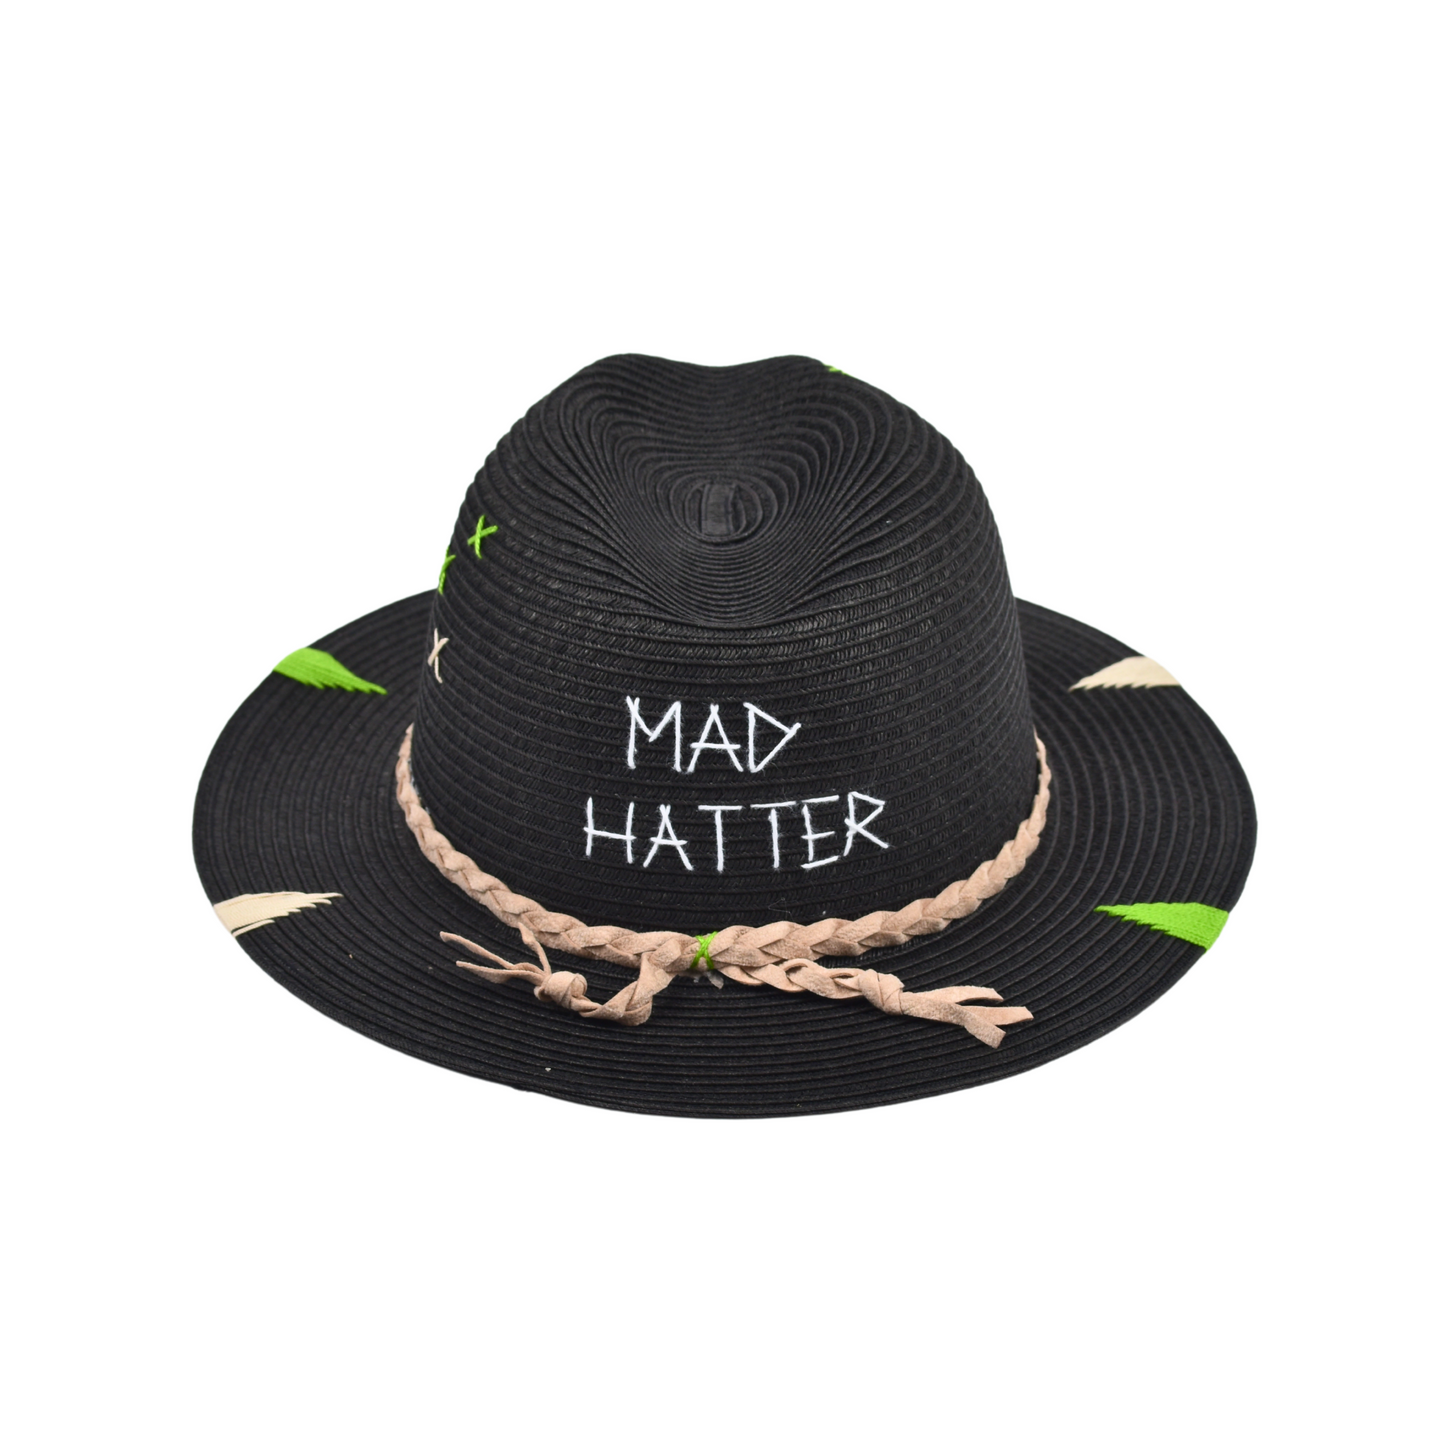 MAD HATTER - Nero